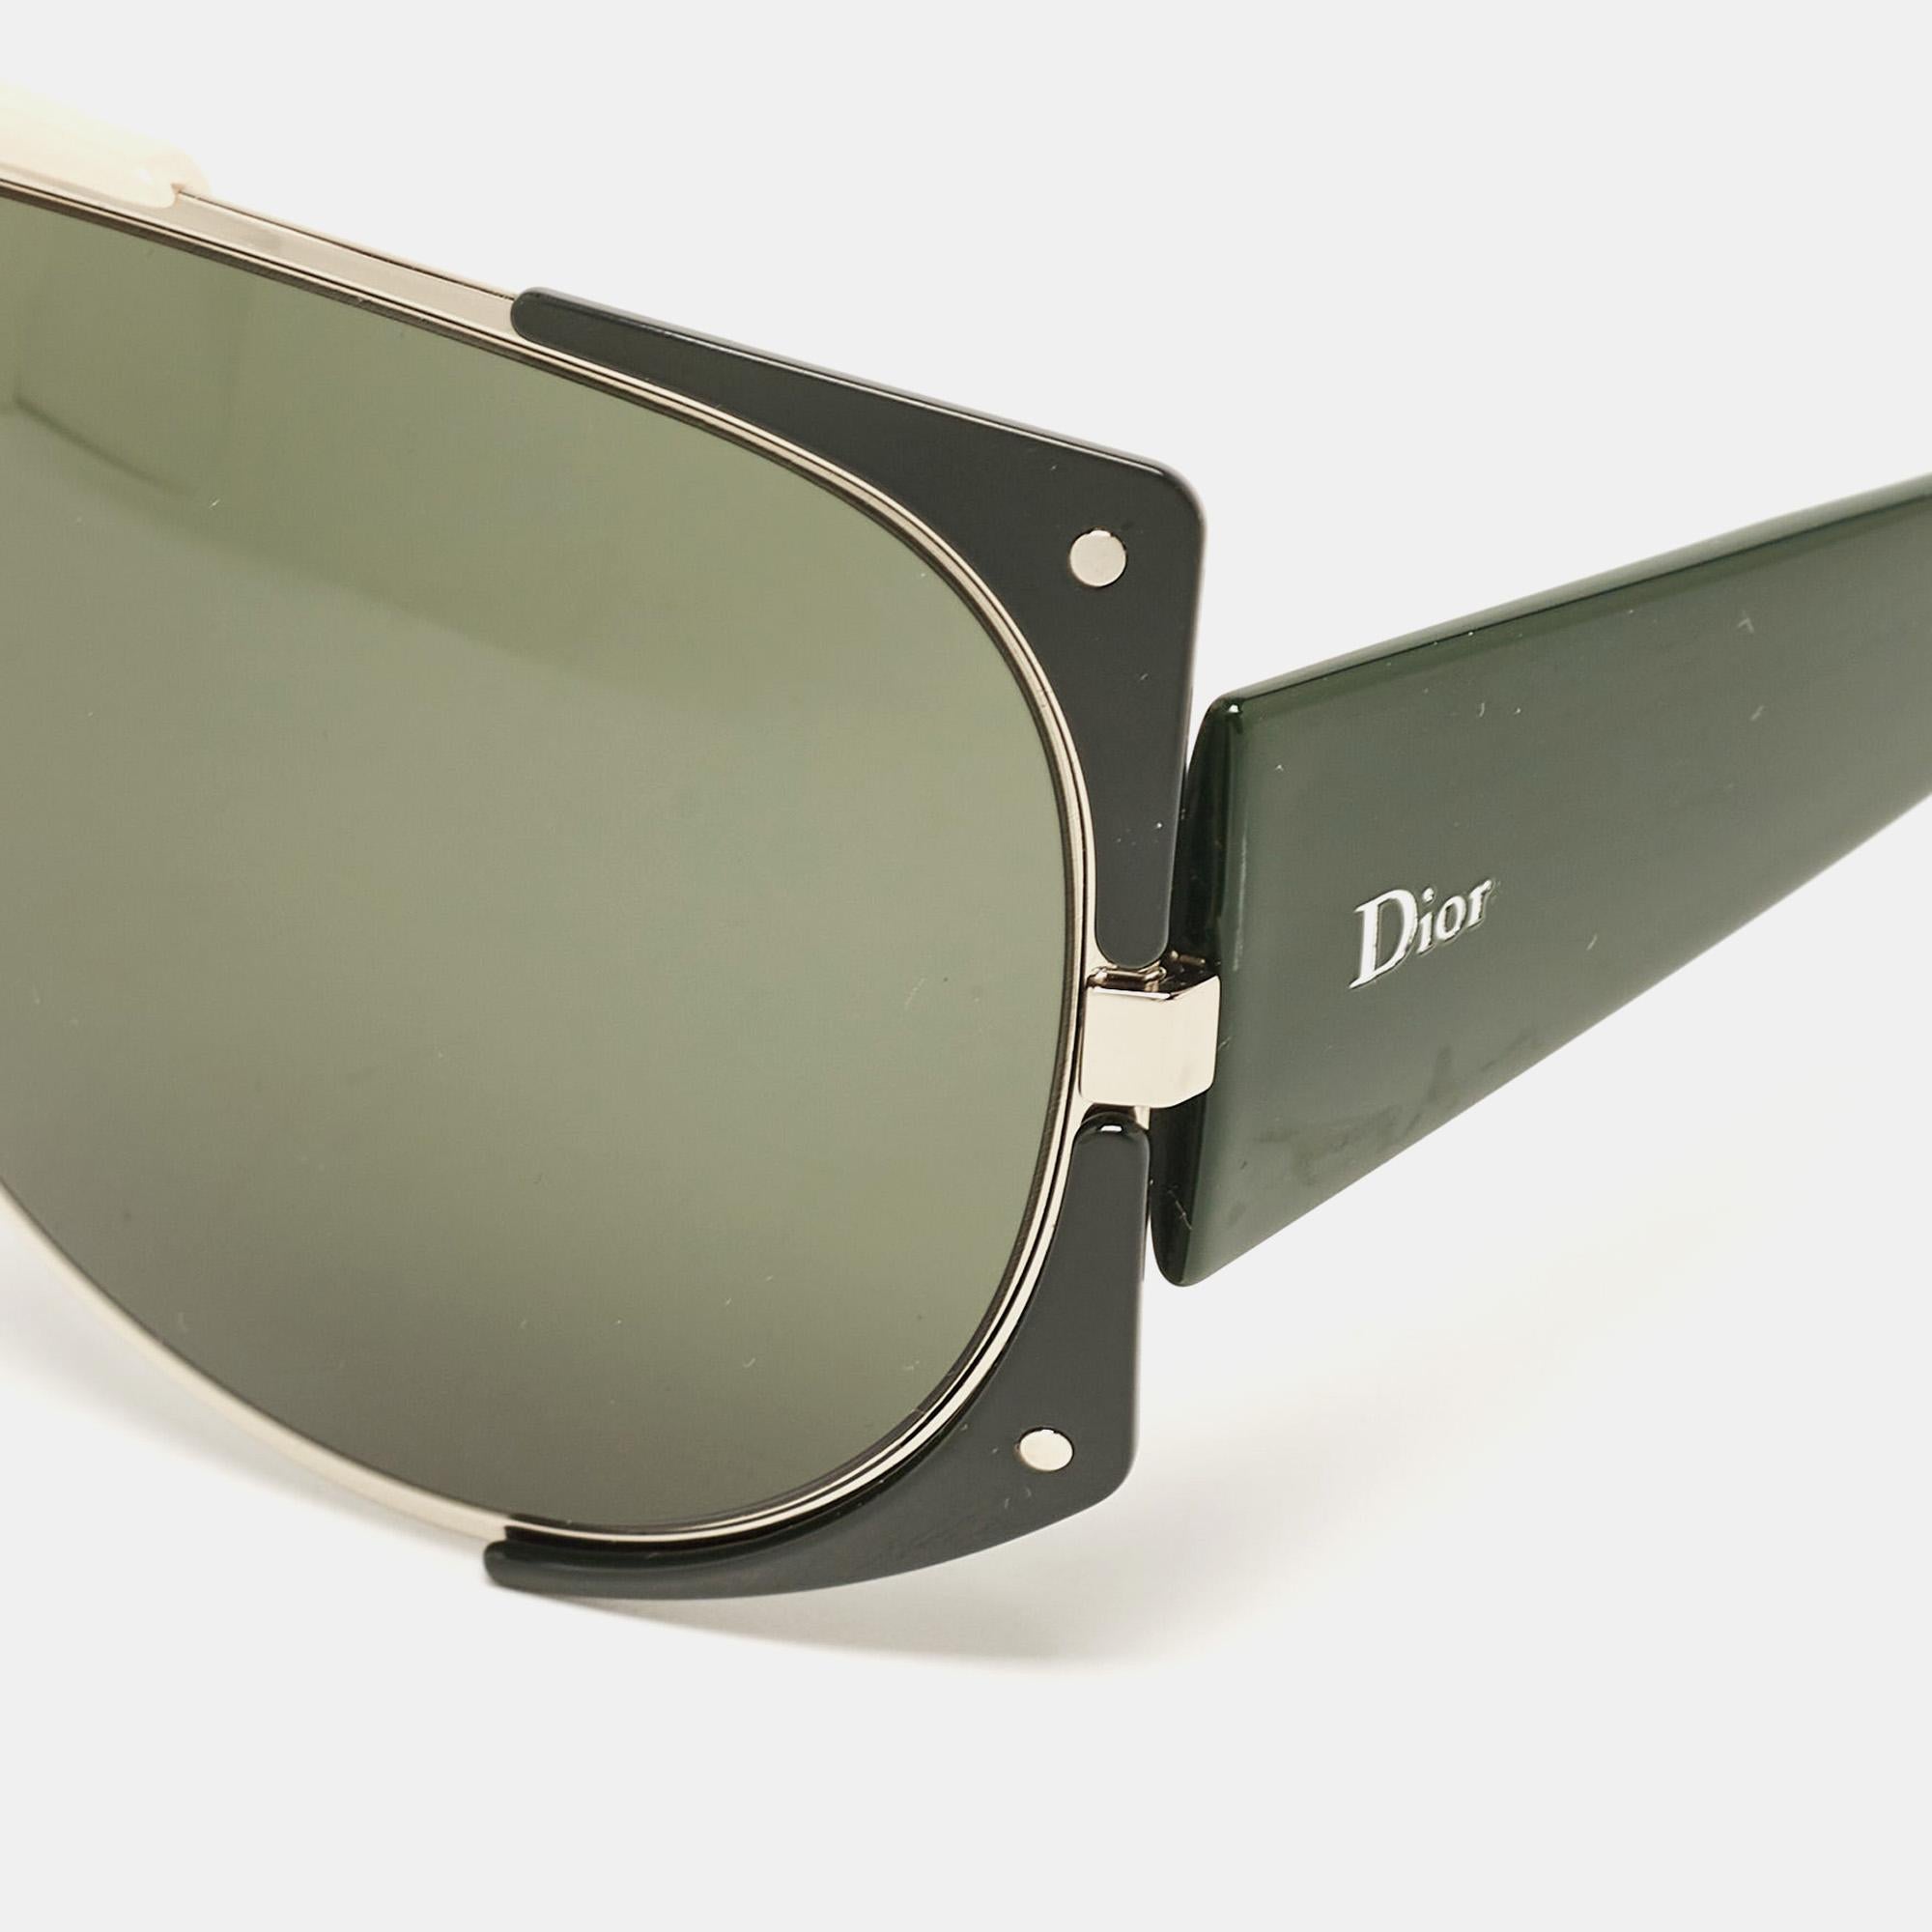 Eine auffällige Sonnenbrille von Dior ist mit Sicherheit ein wertvoller Kauf. Mit ihrem trendigen Rahmen und den augenschonenden Gläsern ist die Sonnenbrille ideal für den ganzen Tag.

Enthält: Original Etui